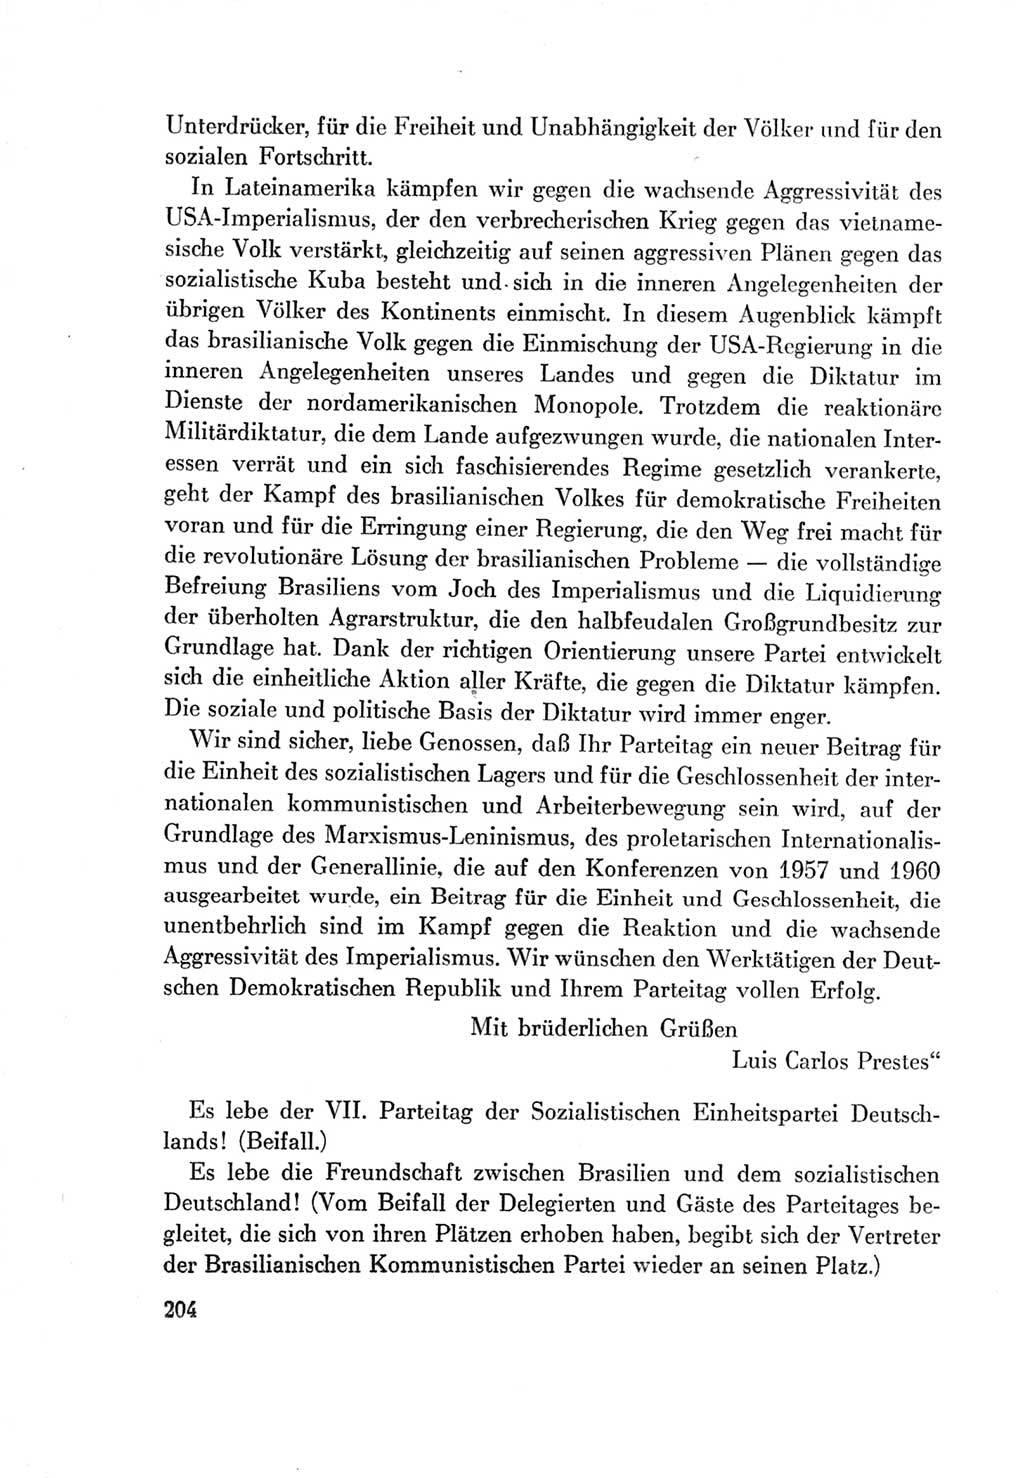 Protokoll der Verhandlungen des Ⅶ. Parteitages der Sozialistischen Einheitspartei Deutschlands (SED) [Deutsche Demokratische Republik (DDR)] 1967, Band Ⅱ, Seite 204 (Prot. Verh. Ⅶ. PT SED DDR 1967, Bd. Ⅱ, S. 204)